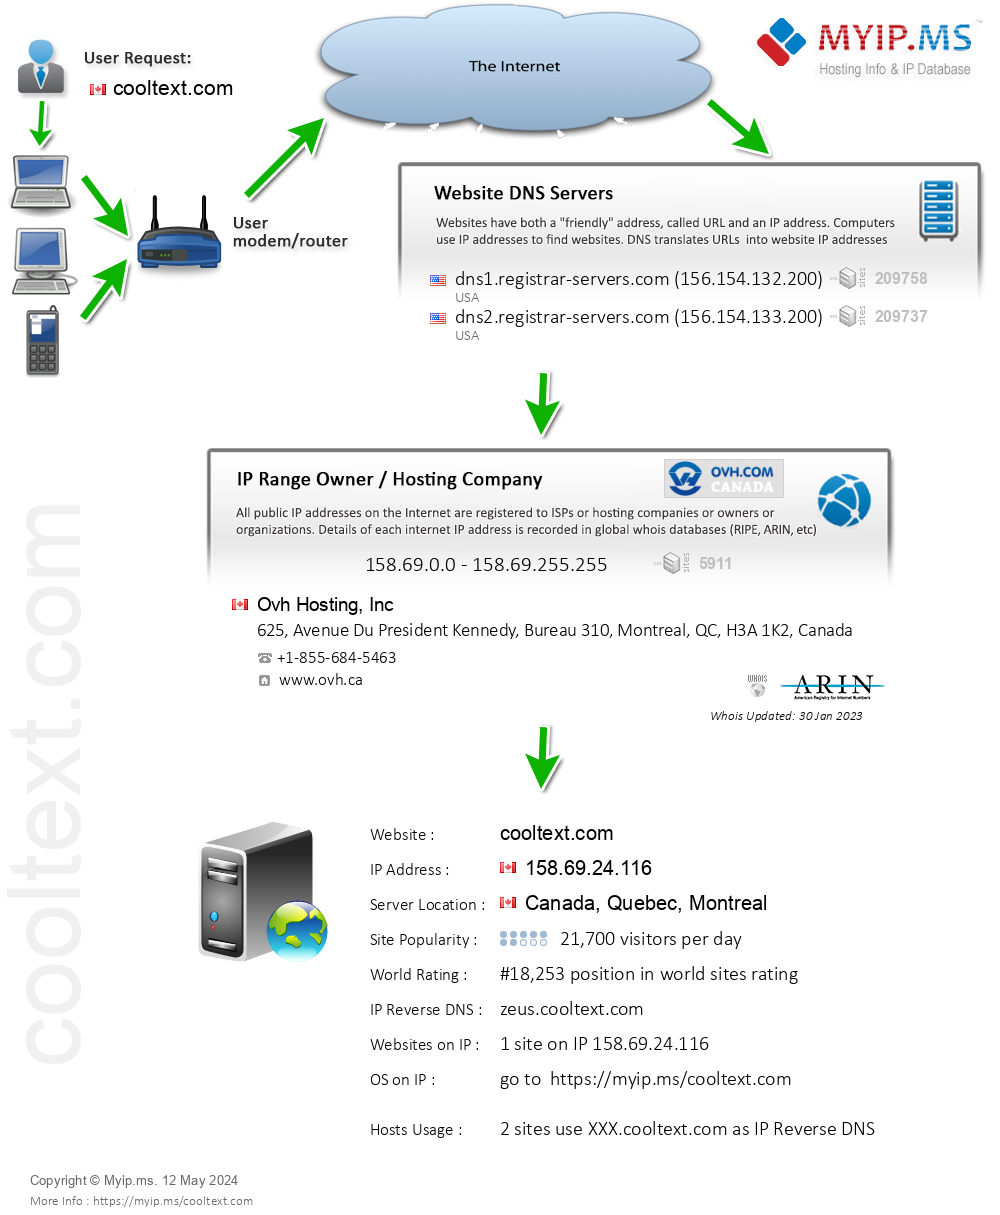 Cooltext.com - Website Hosting Visual IP Diagram